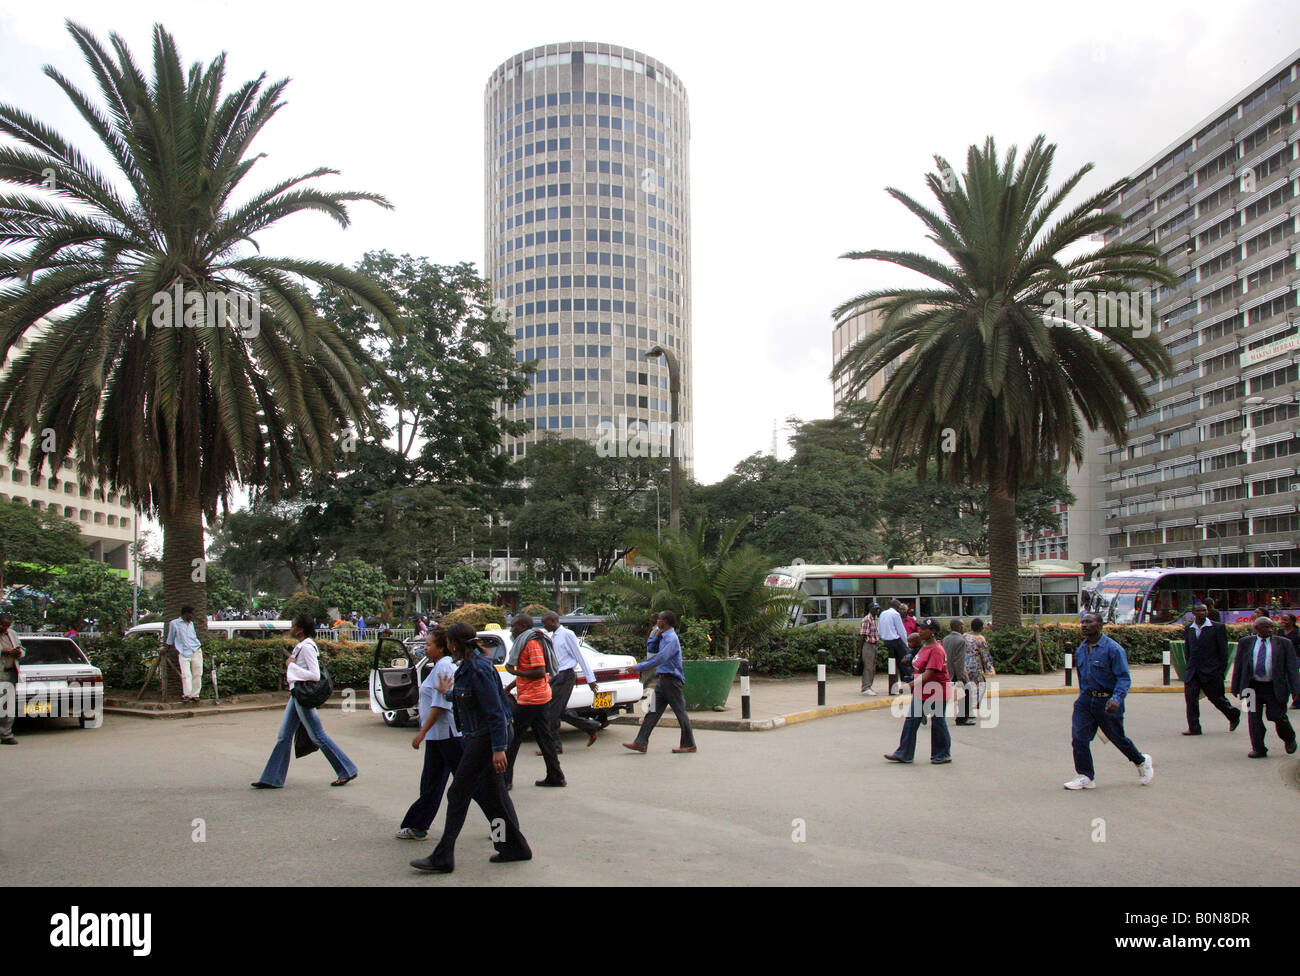 Kenia: Stadt Nairobi mit Hilton Hotel (Mitte) Stockfoto